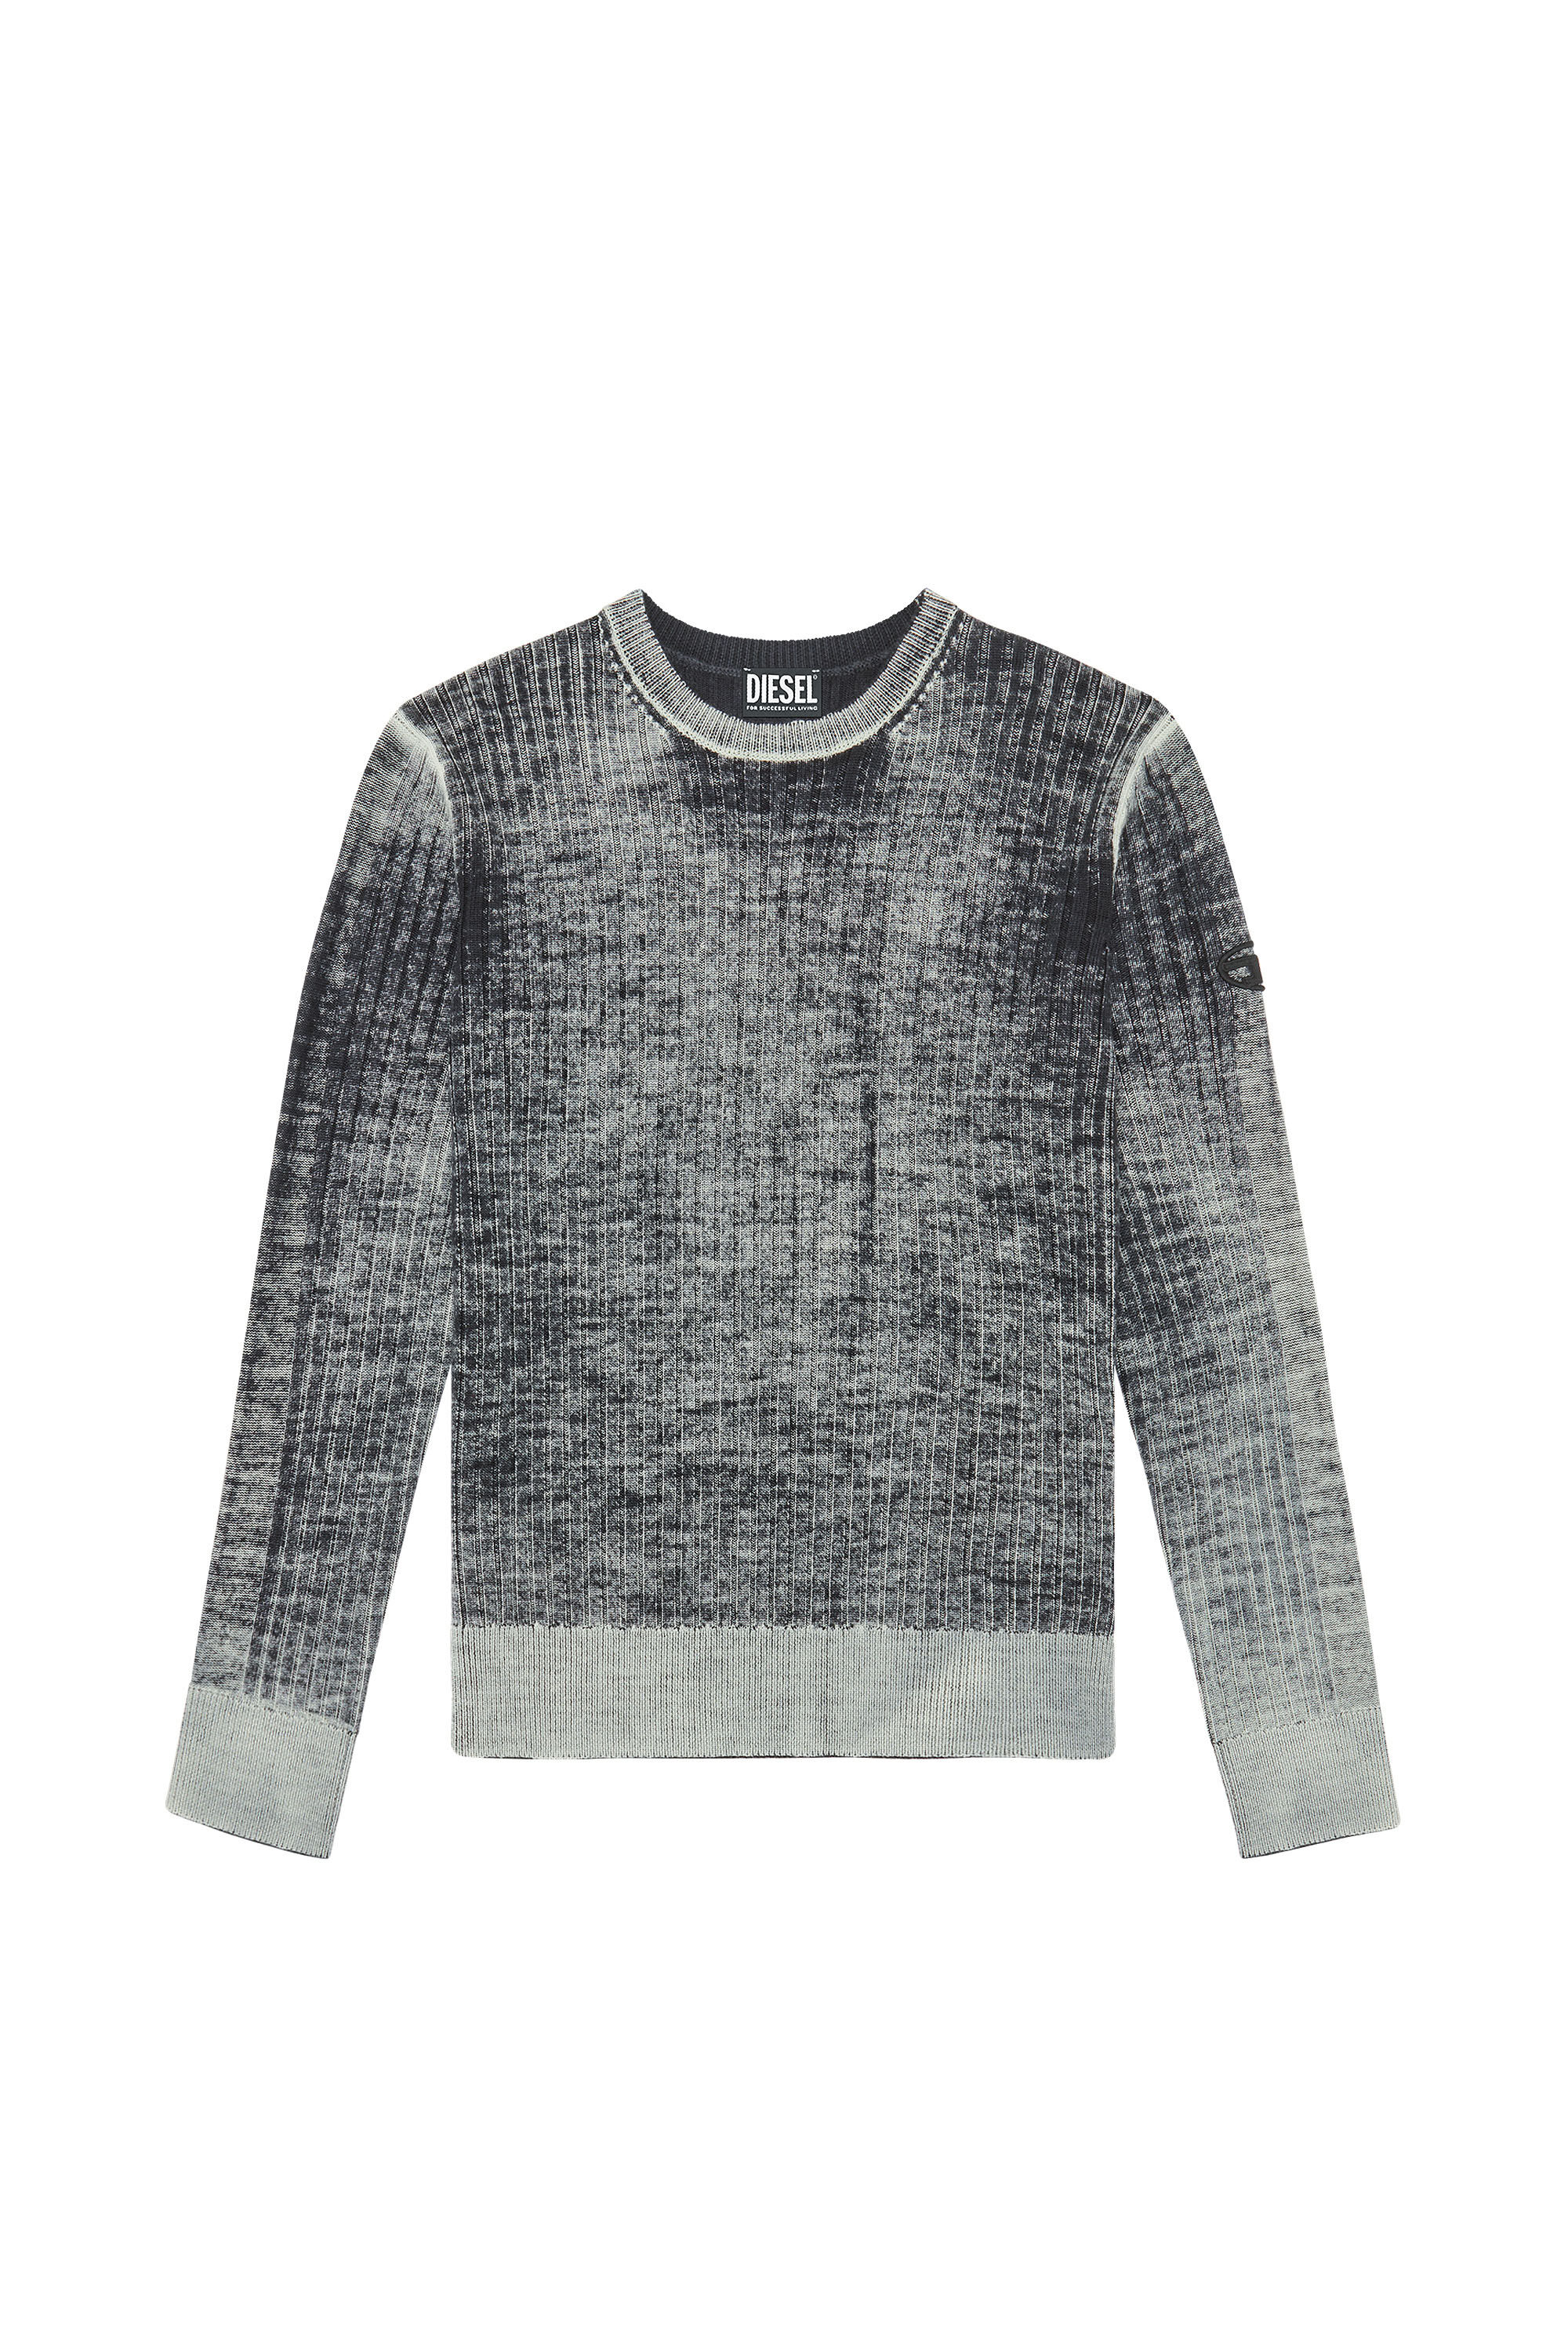 K-ANDELERO Man: Printed wool jumper | Diesel